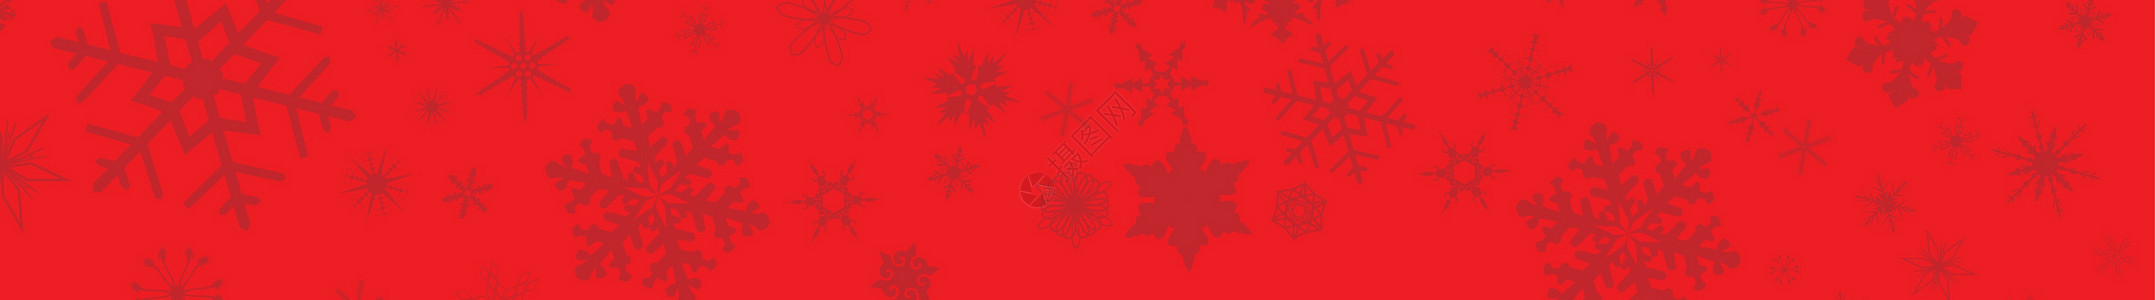 红圣诞雪花网络横幅插图互联网电脑艺术网络季节性绘画下雪艺术品红色背景图片